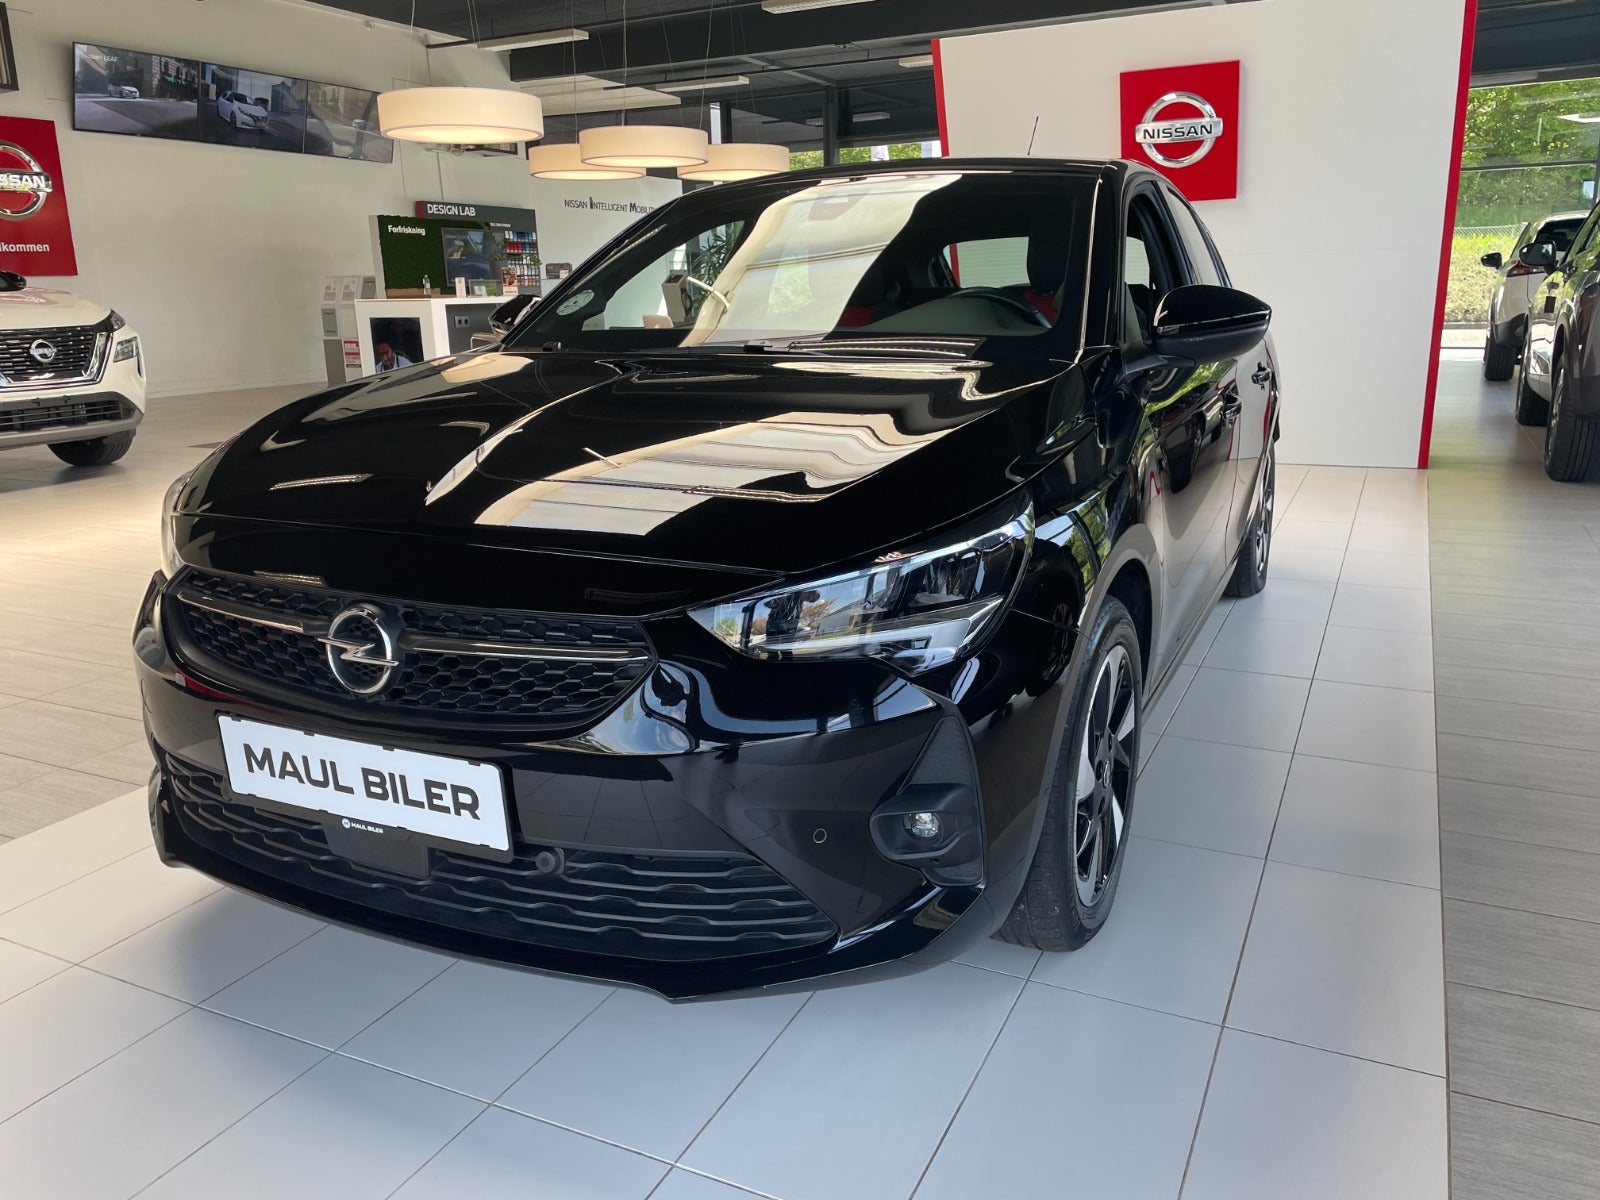 Opel Corsa-e 2021